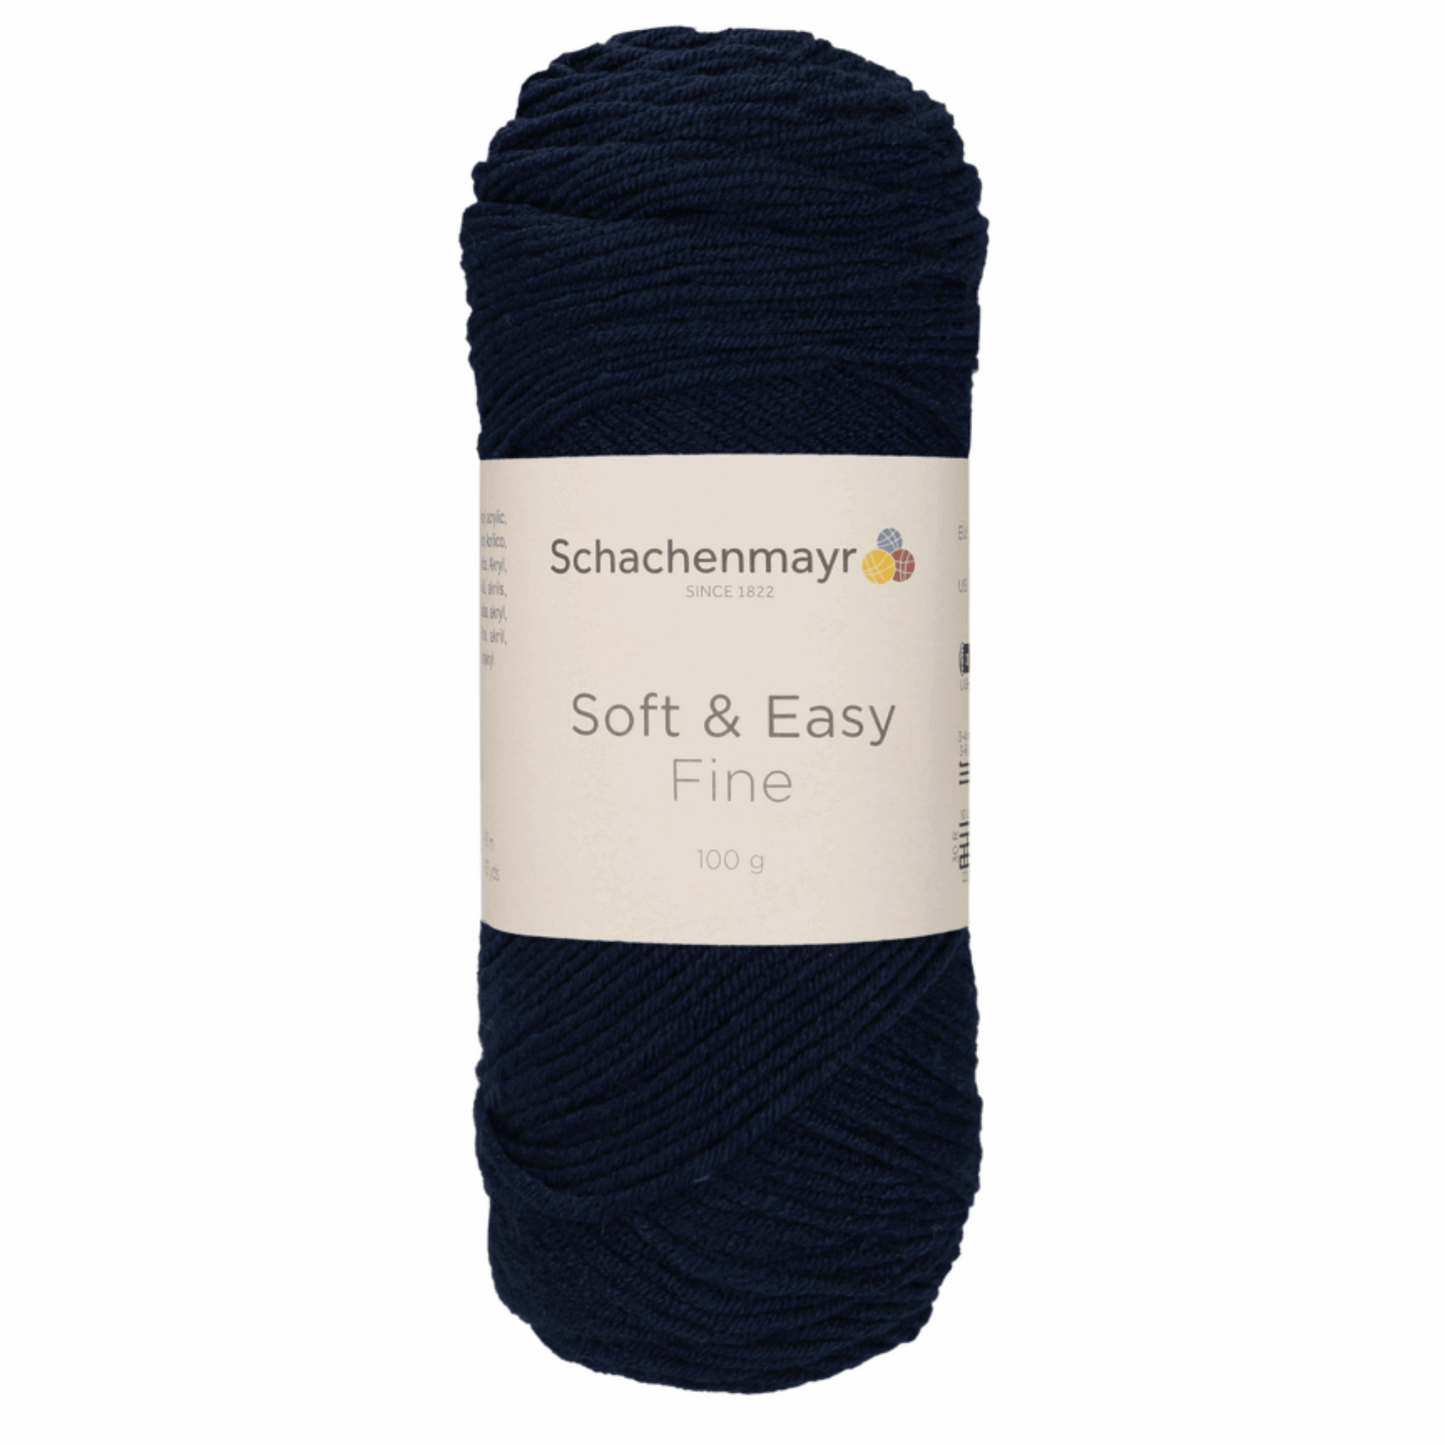 Schachenmayr Soft & Easy Fine 100g, 90402, Farbe Marine 50